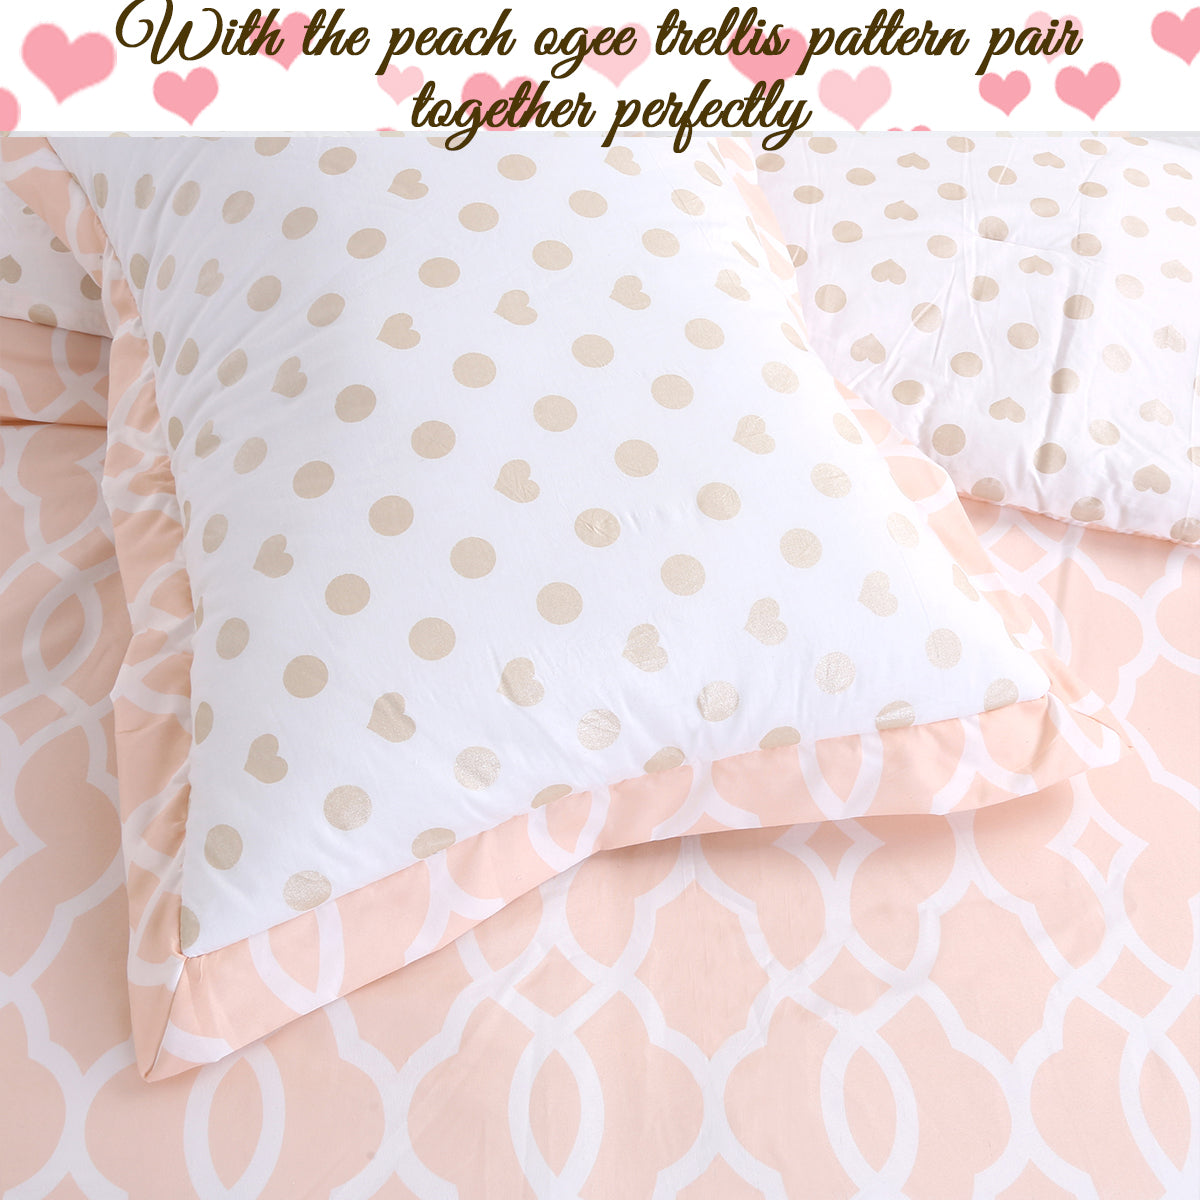 Peach Gold Heart Polka Dot Reversible Comforter Bedding Set